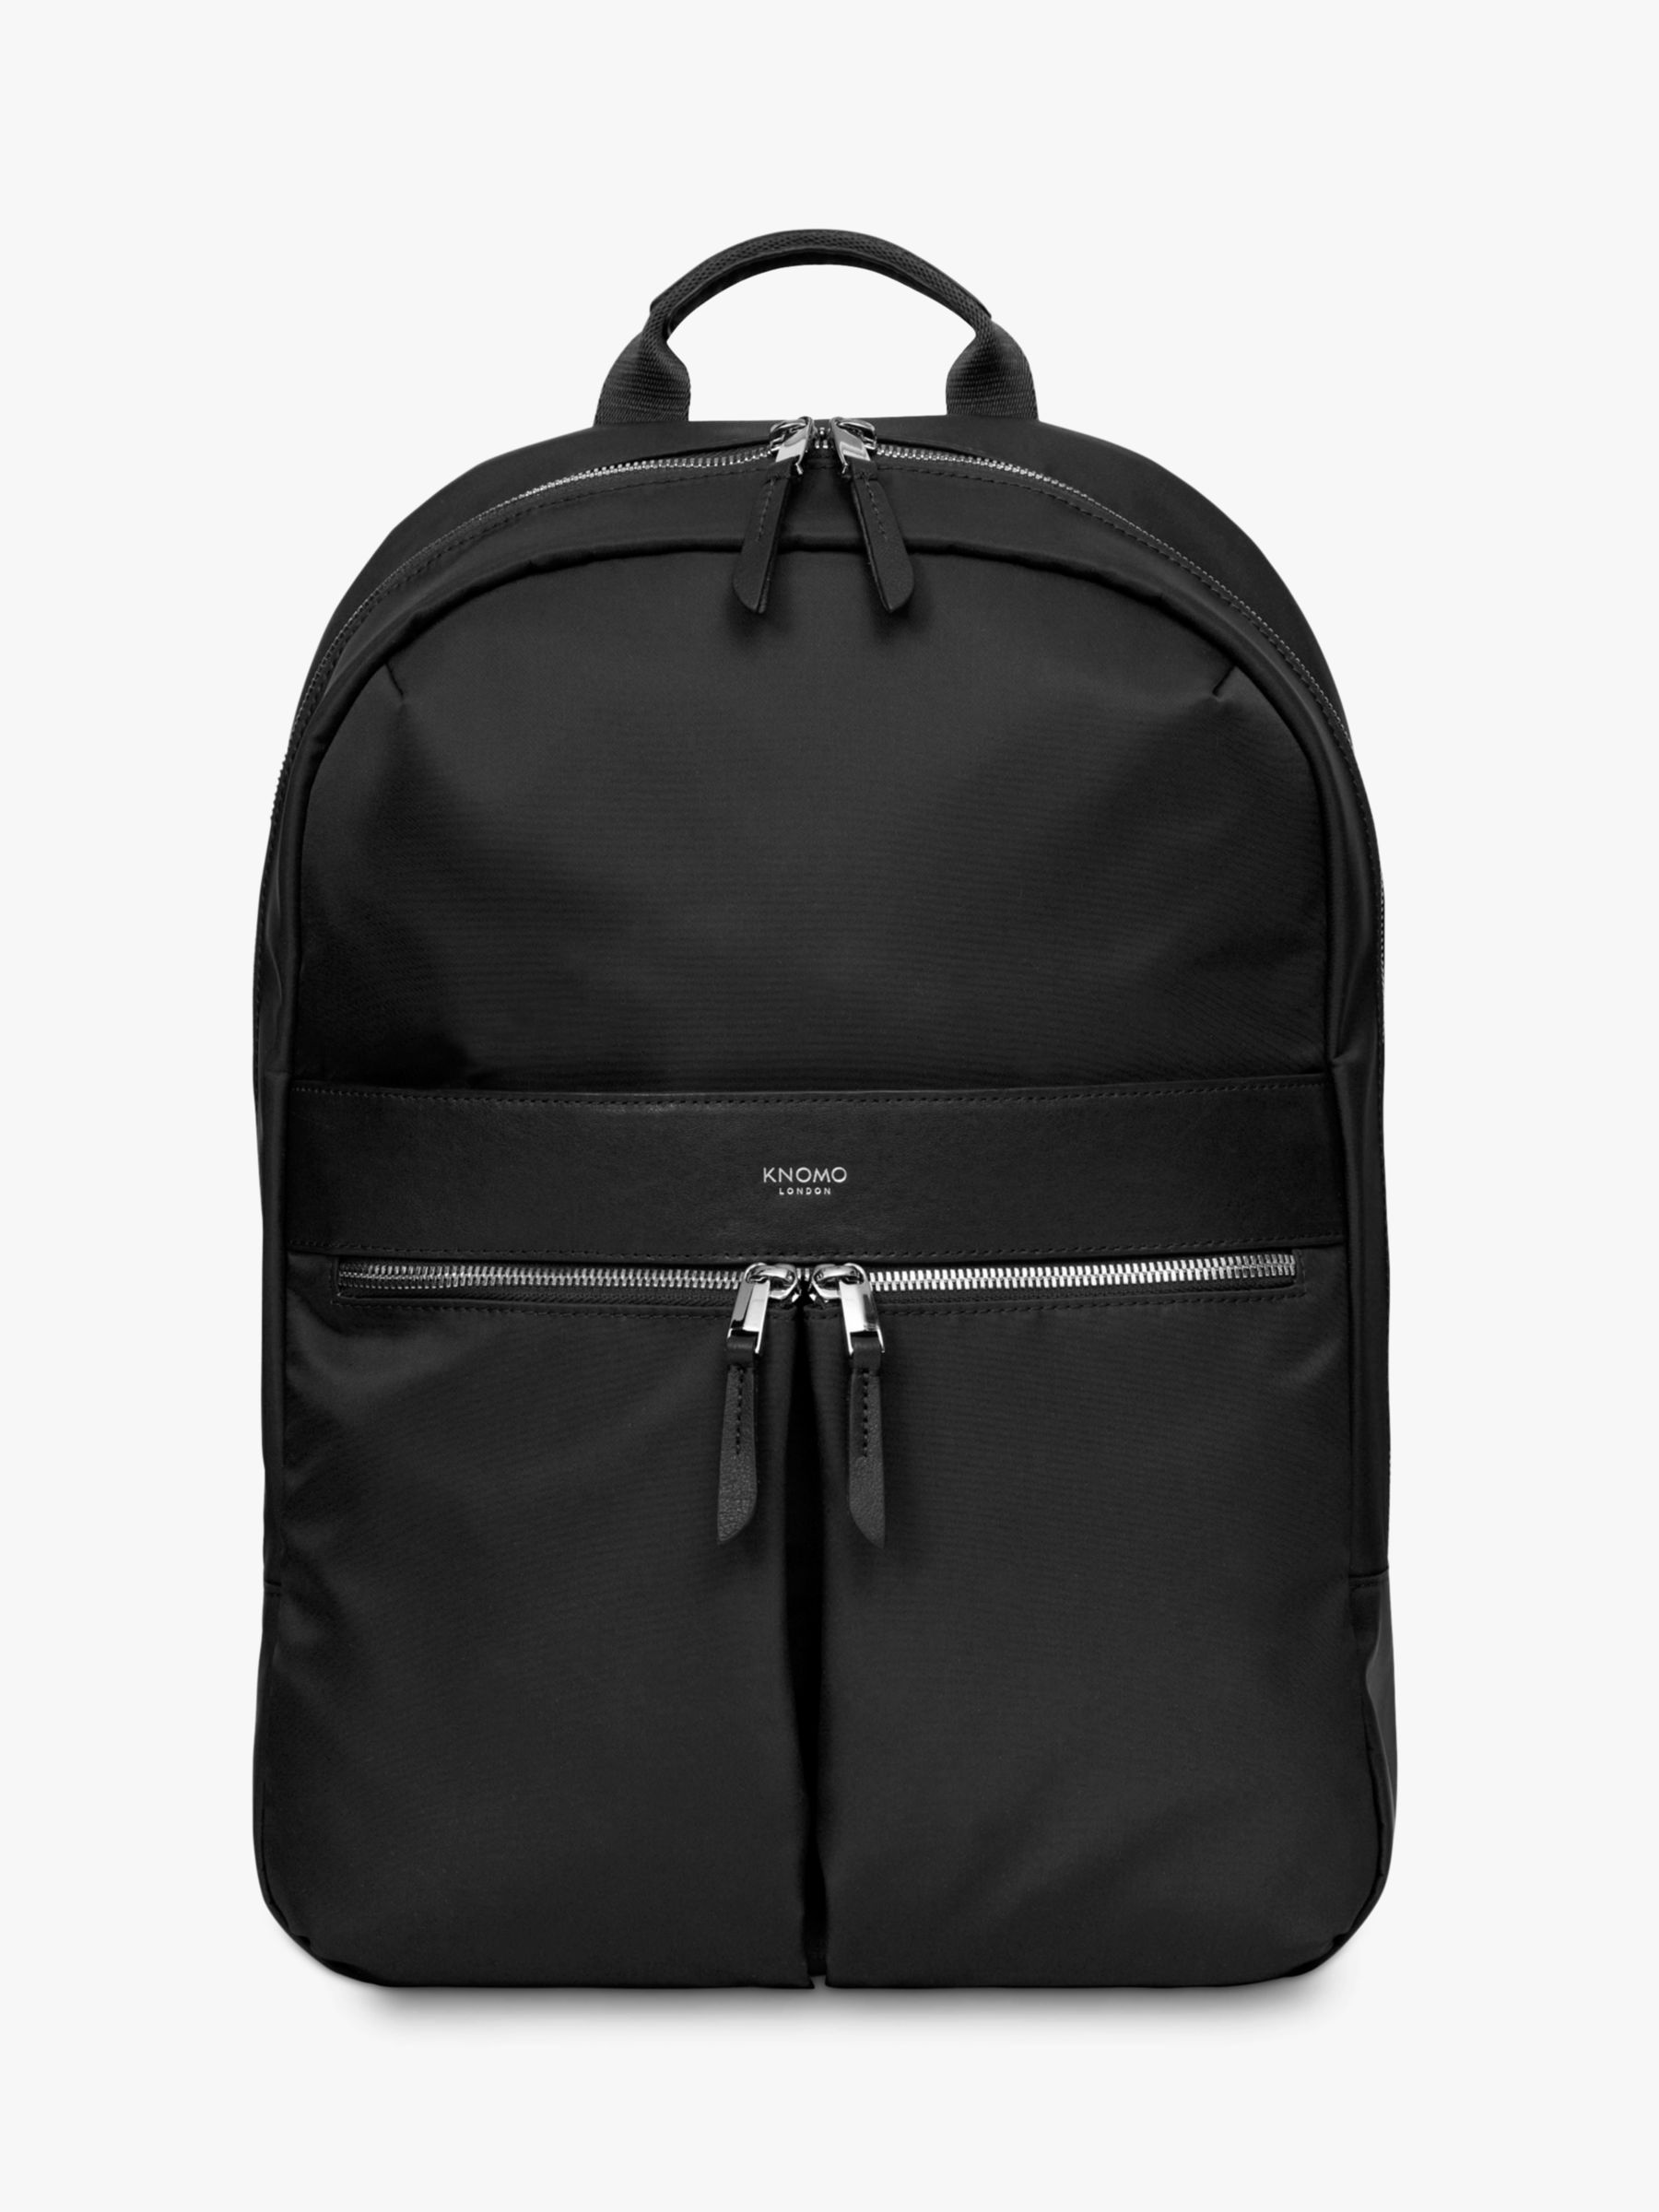 KNOMO Mayfair Beauchamp 2.0 Backpack for 14